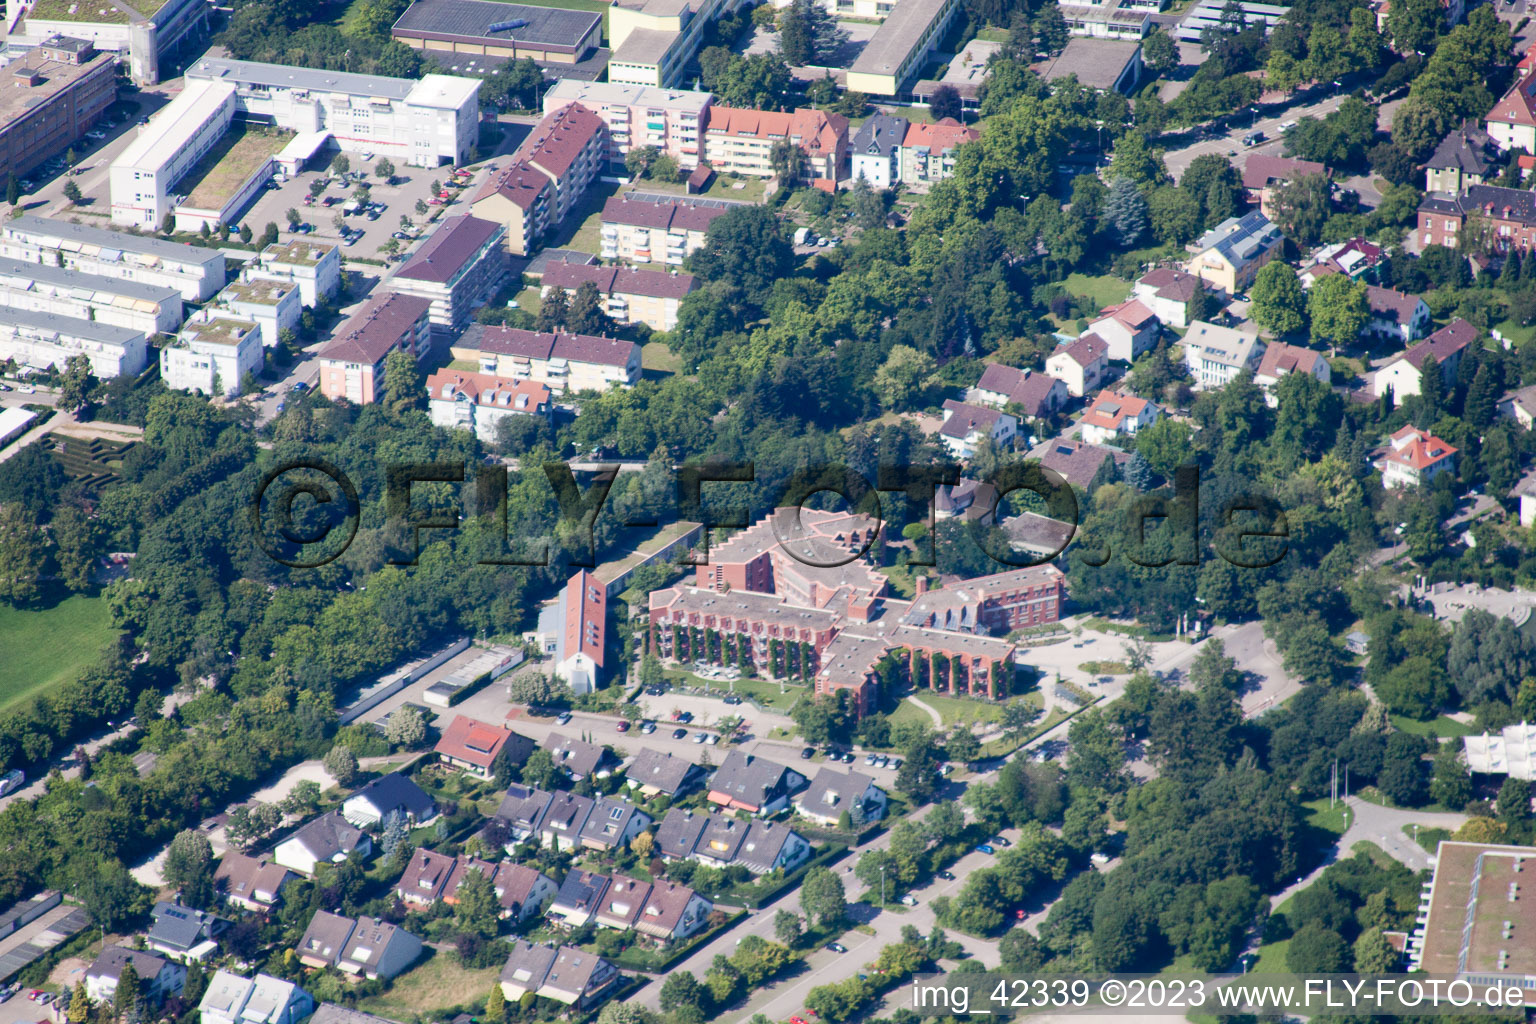 Aerial view of Caritas senior center at Horbachpark in Ettlingen in the state Baden-Wuerttemberg, Germany